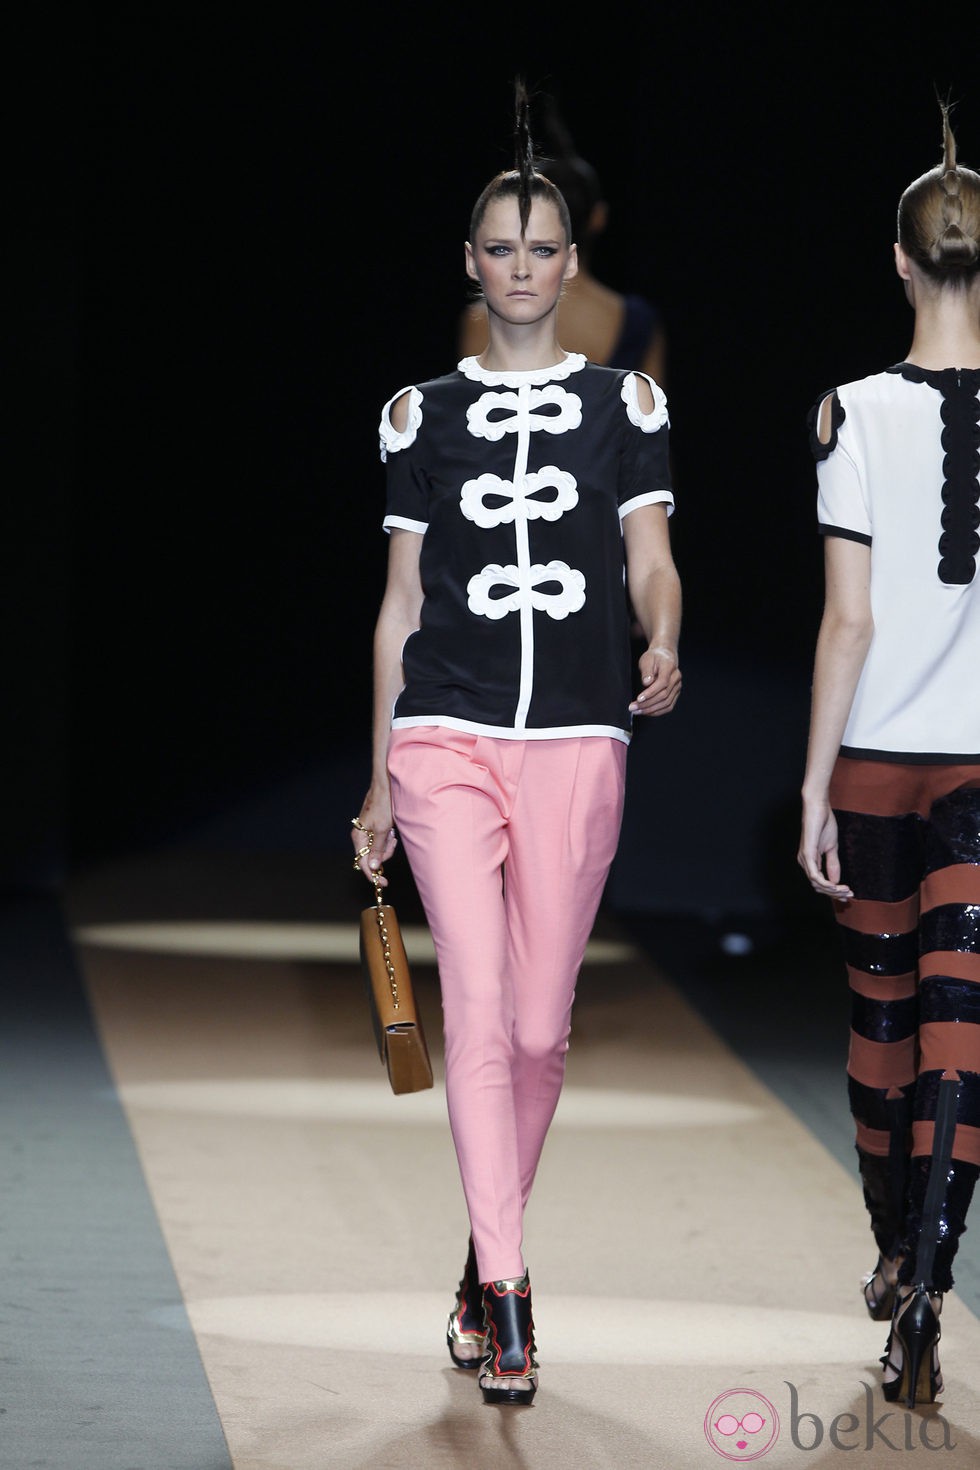 Pantalón bombacho rosa de Miguel Palacio, colección primavera de 2012